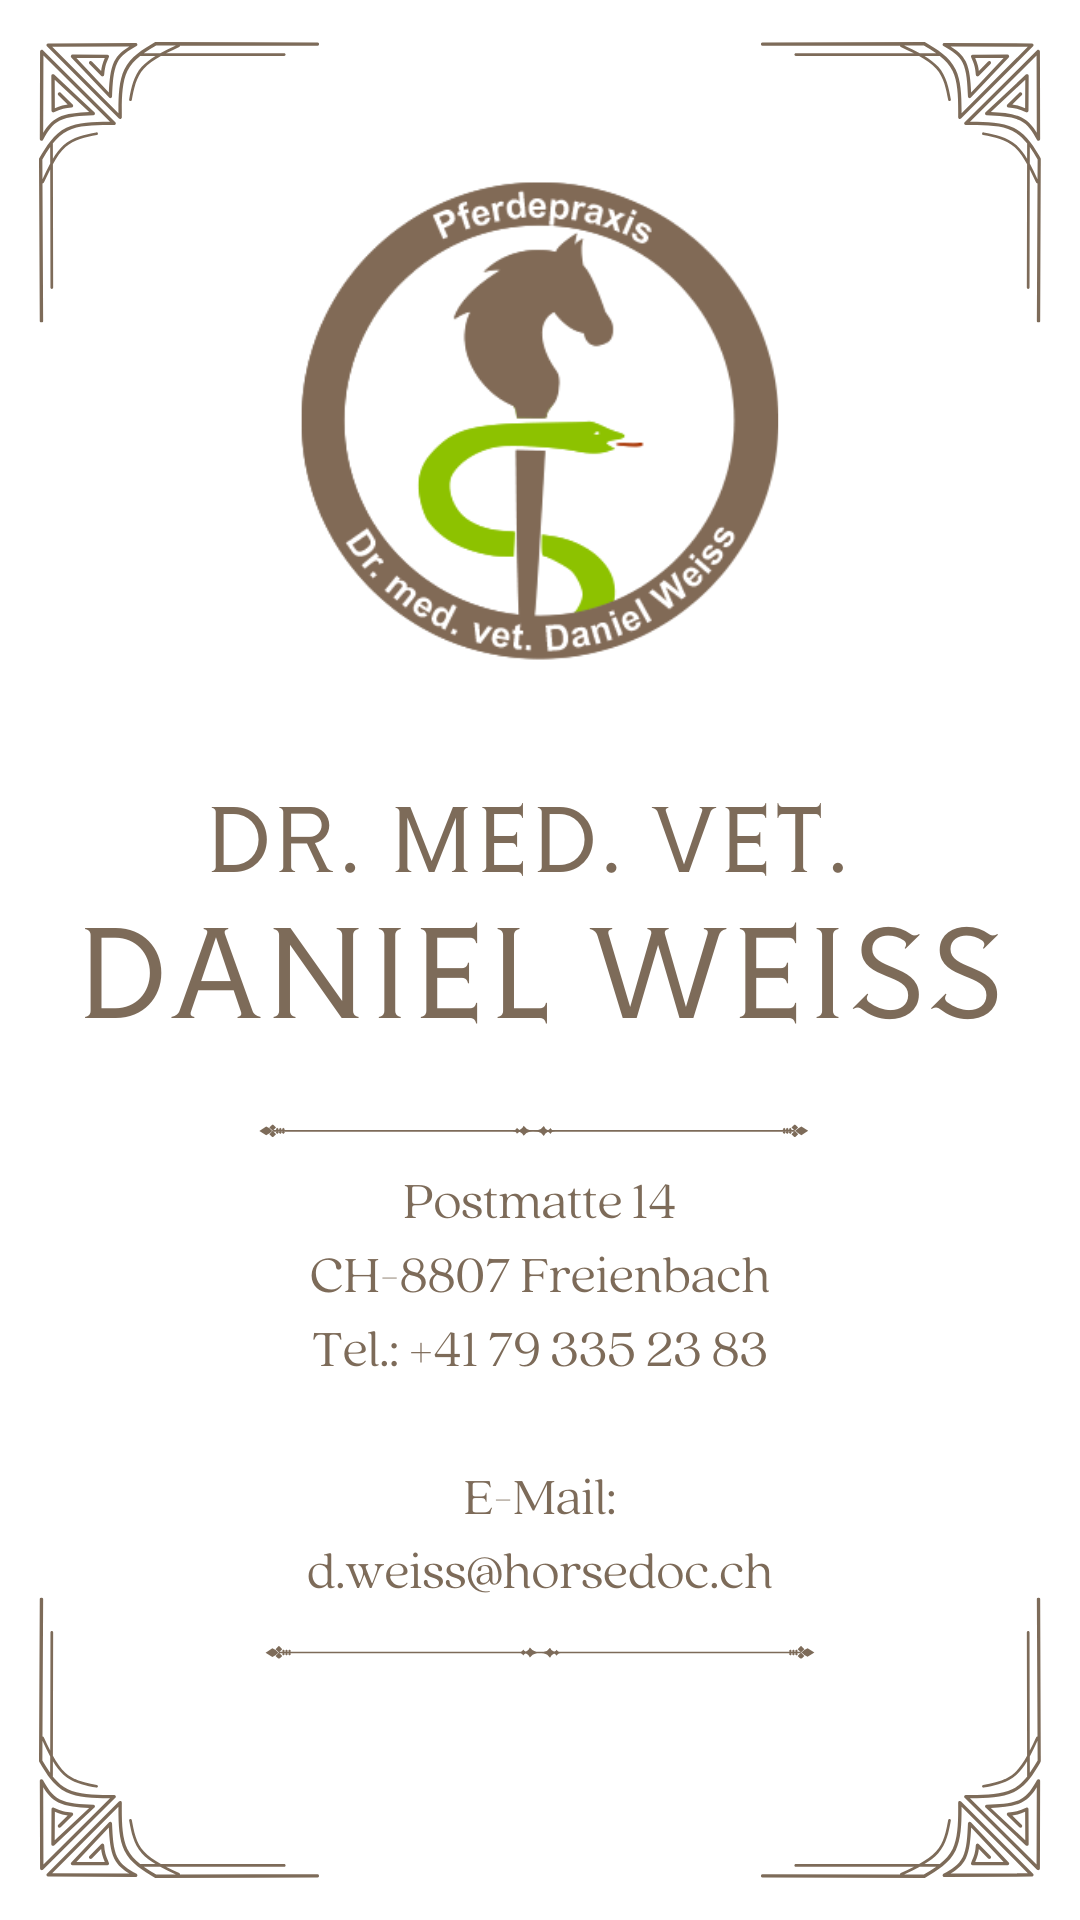 Pferdepraxis Dr. med. vet. Daniel Weiss